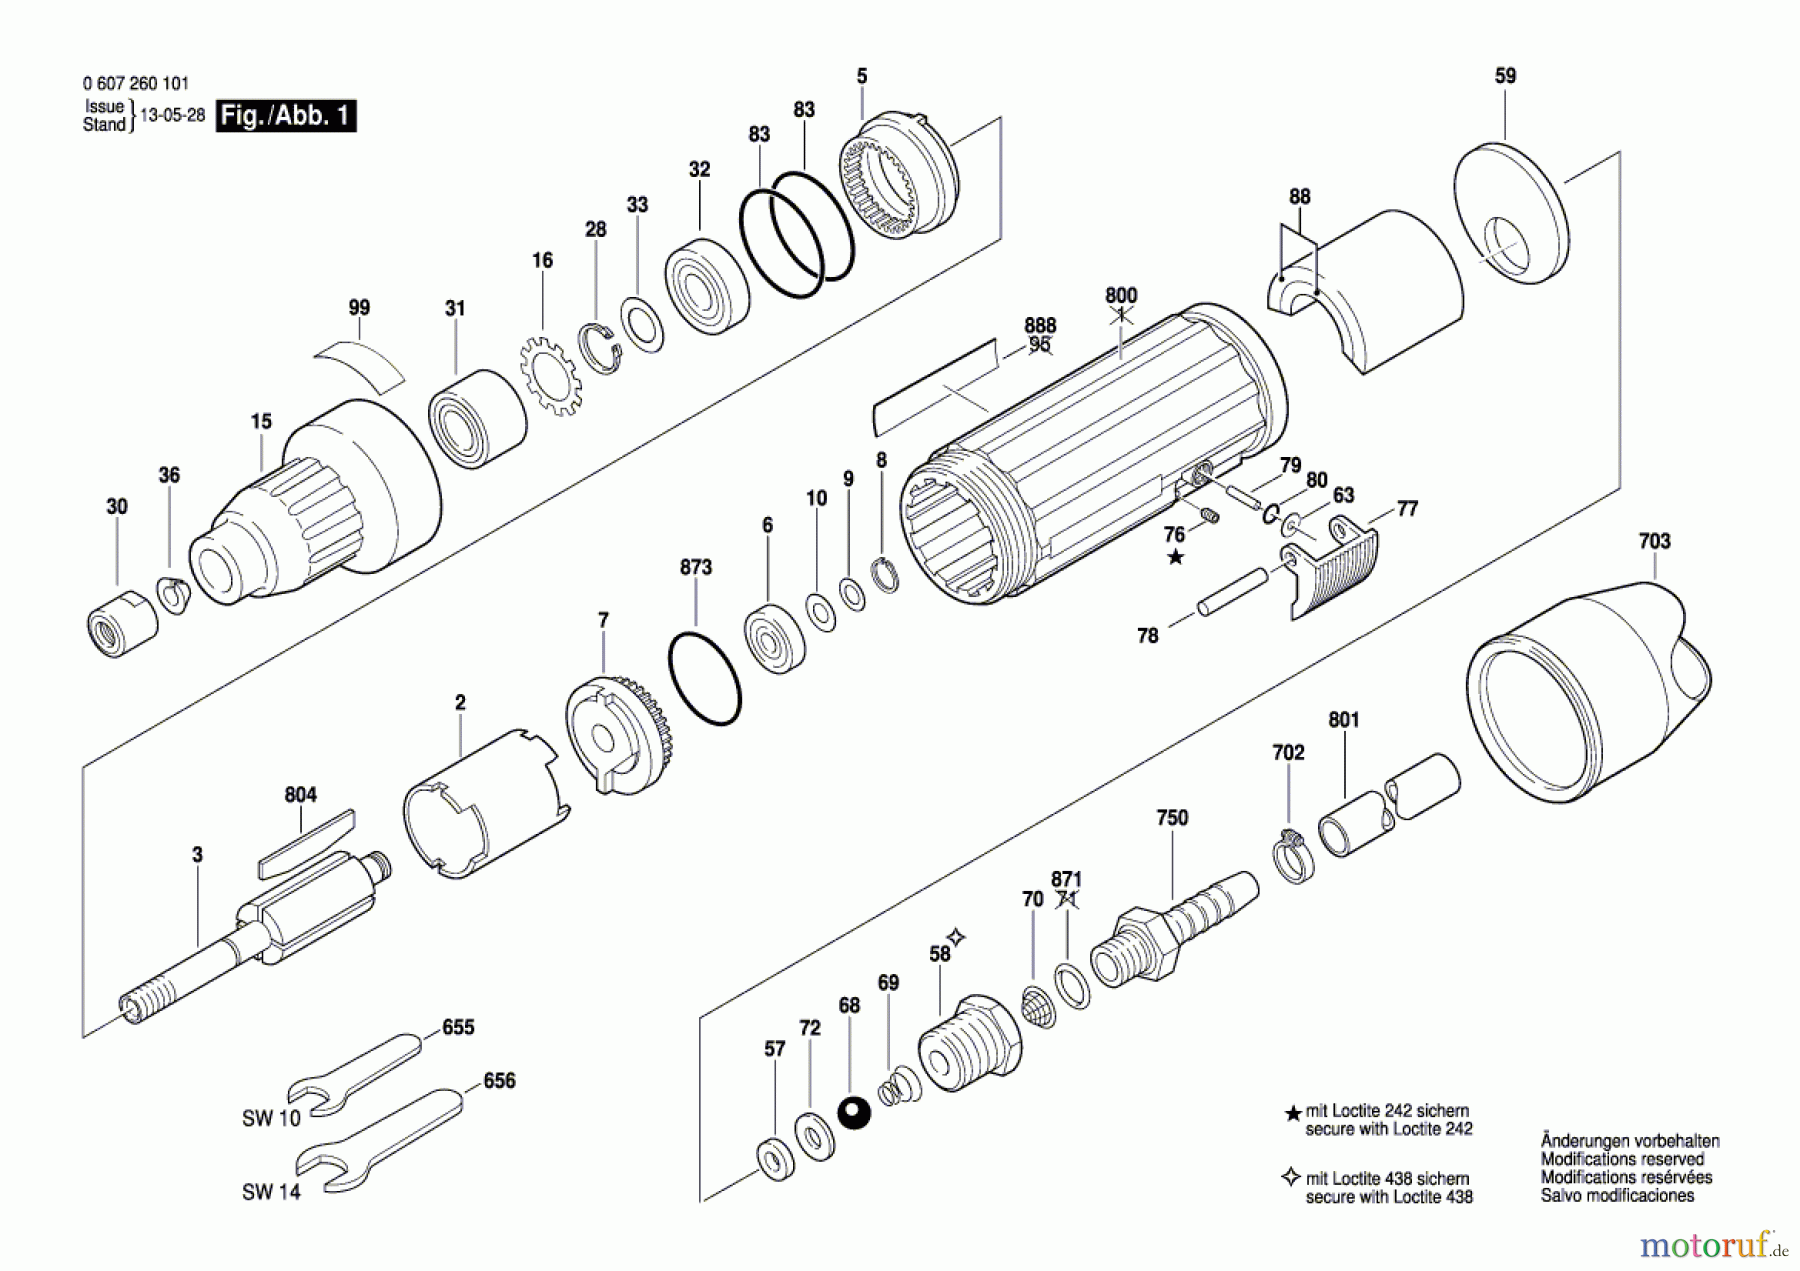  Bosch Werkzeug Pw-Geradschleifer 320 WATT-SERIE Seite 1